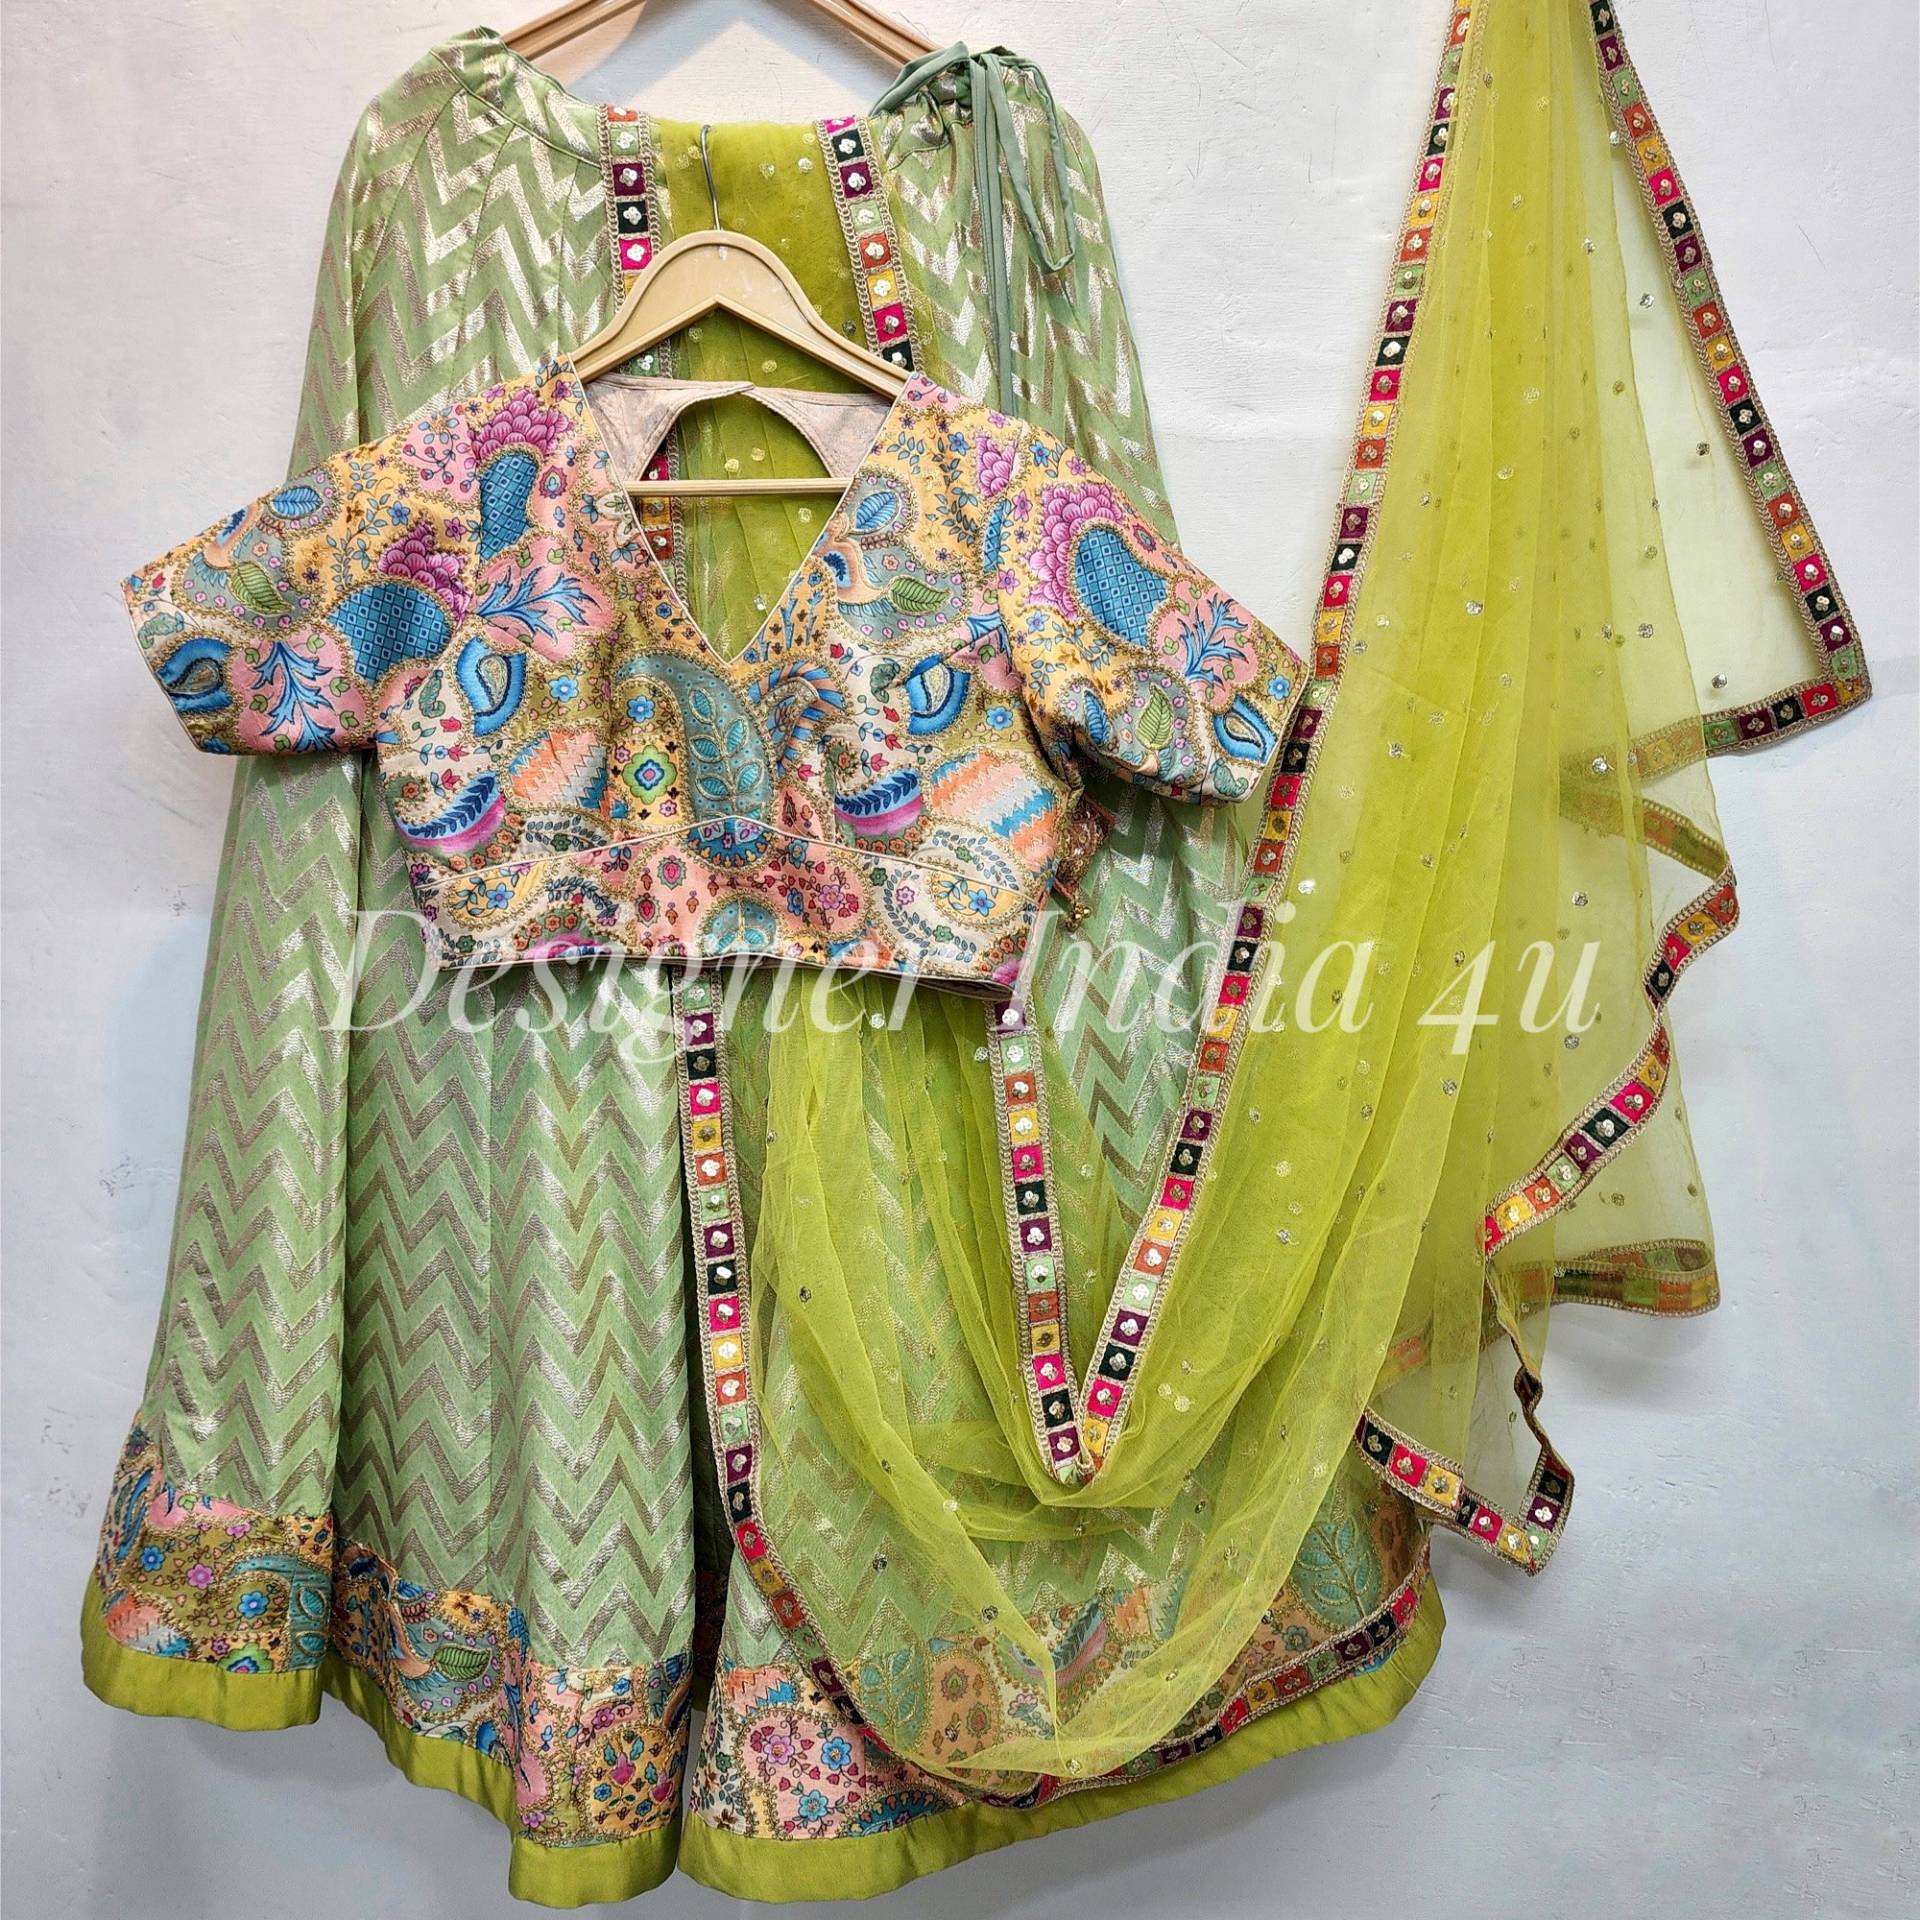 Designer Lehenga Choli Bluse Für Frauen Bestickte Mädchen - Maßanfertigung von Designerindia4u